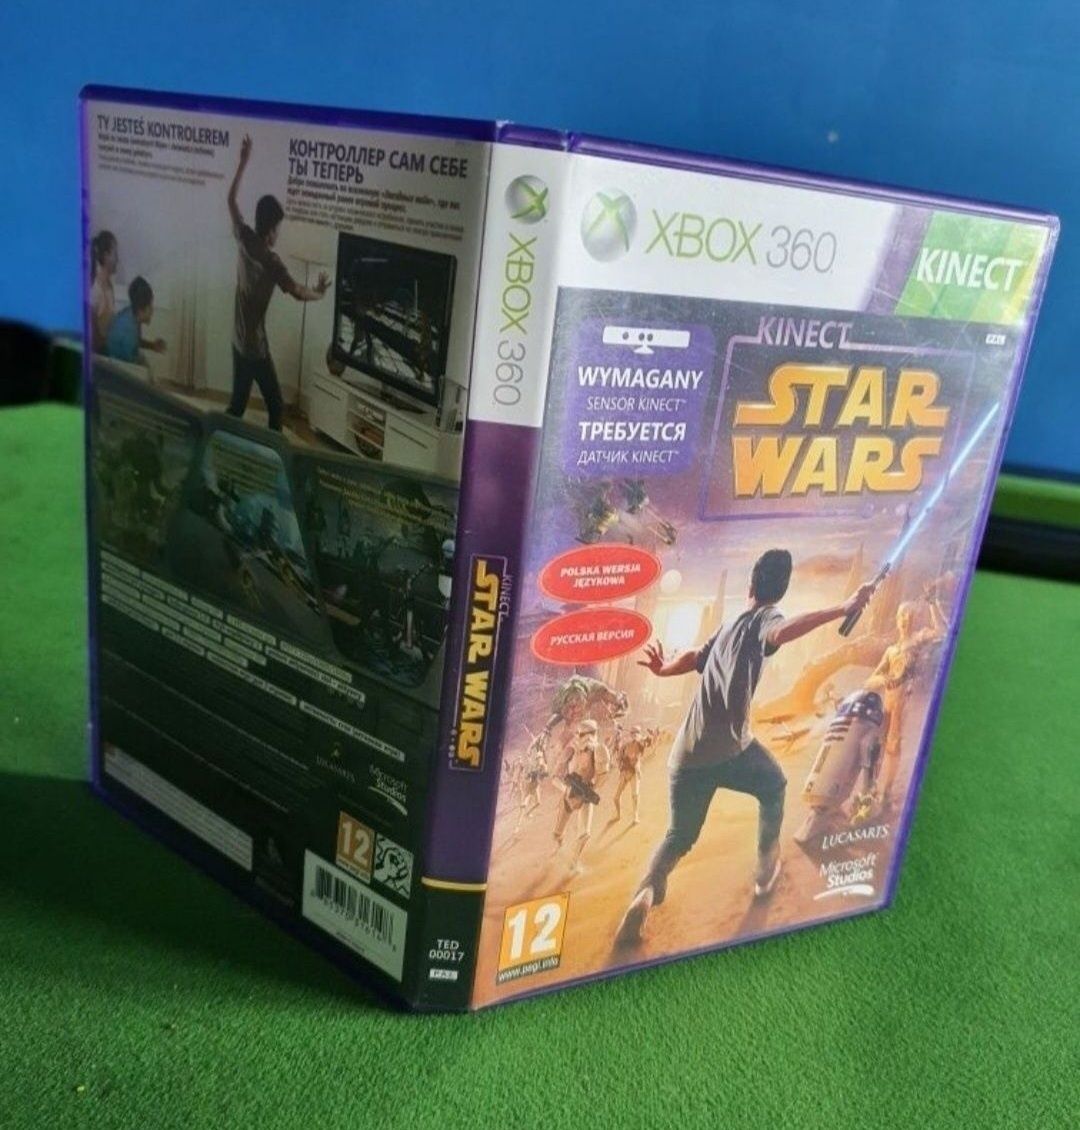 Kinect Star Wars dubbing po polsku gra dla dzieci kinekt xbox 360 x360